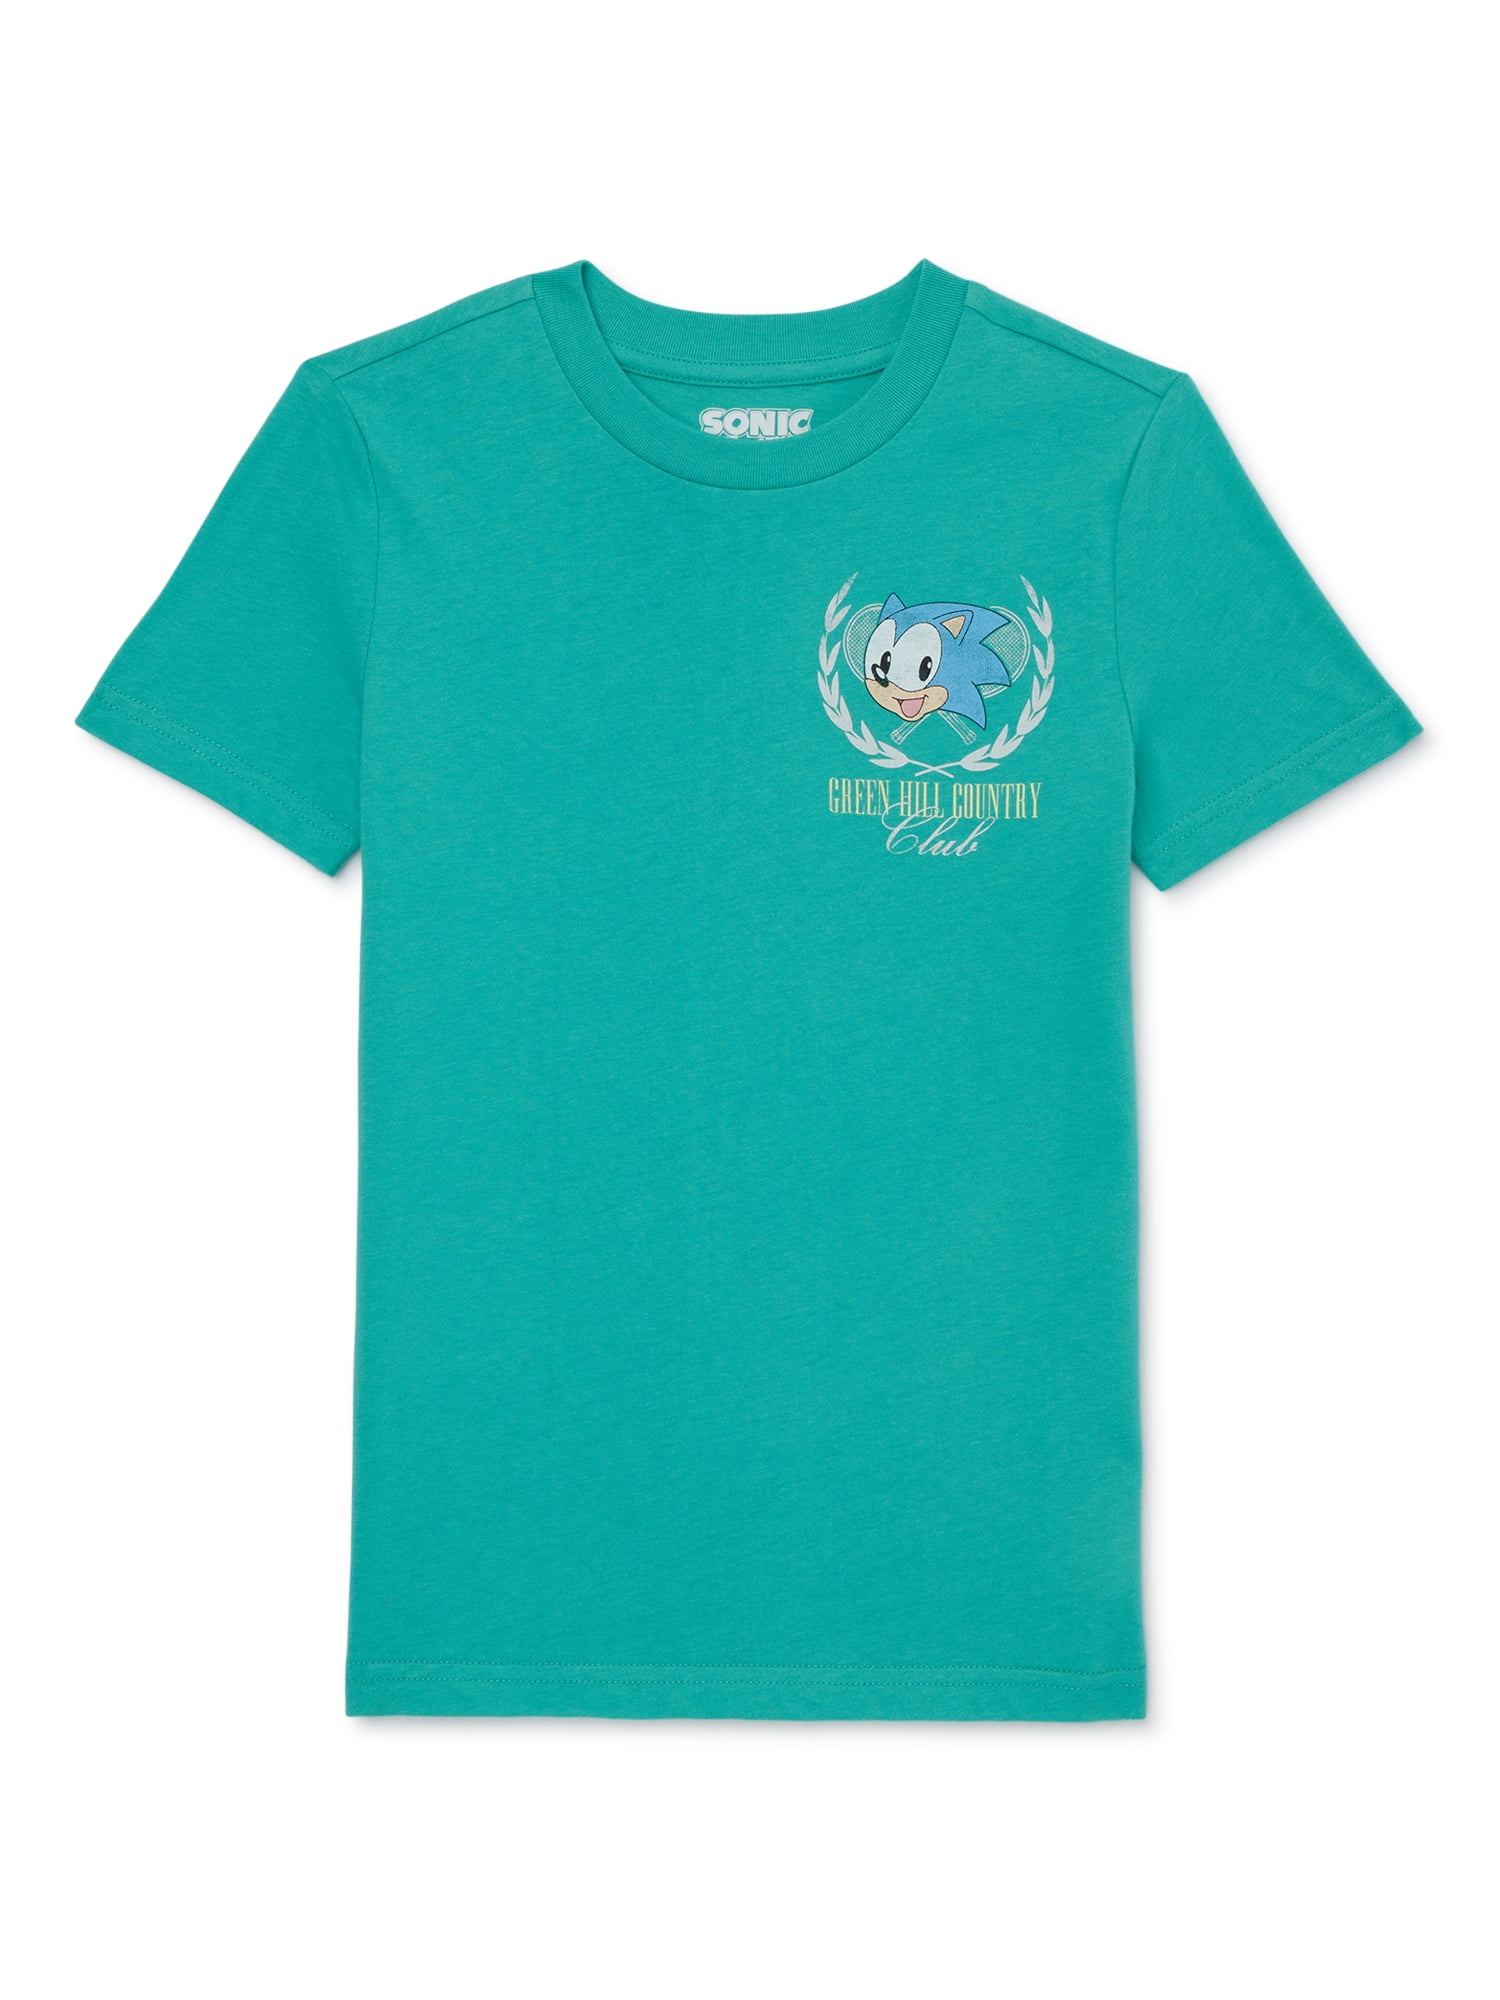 Sonic the Hedgehog Boys Club T-Shirt, Sizes 4-18 - Walmart.com